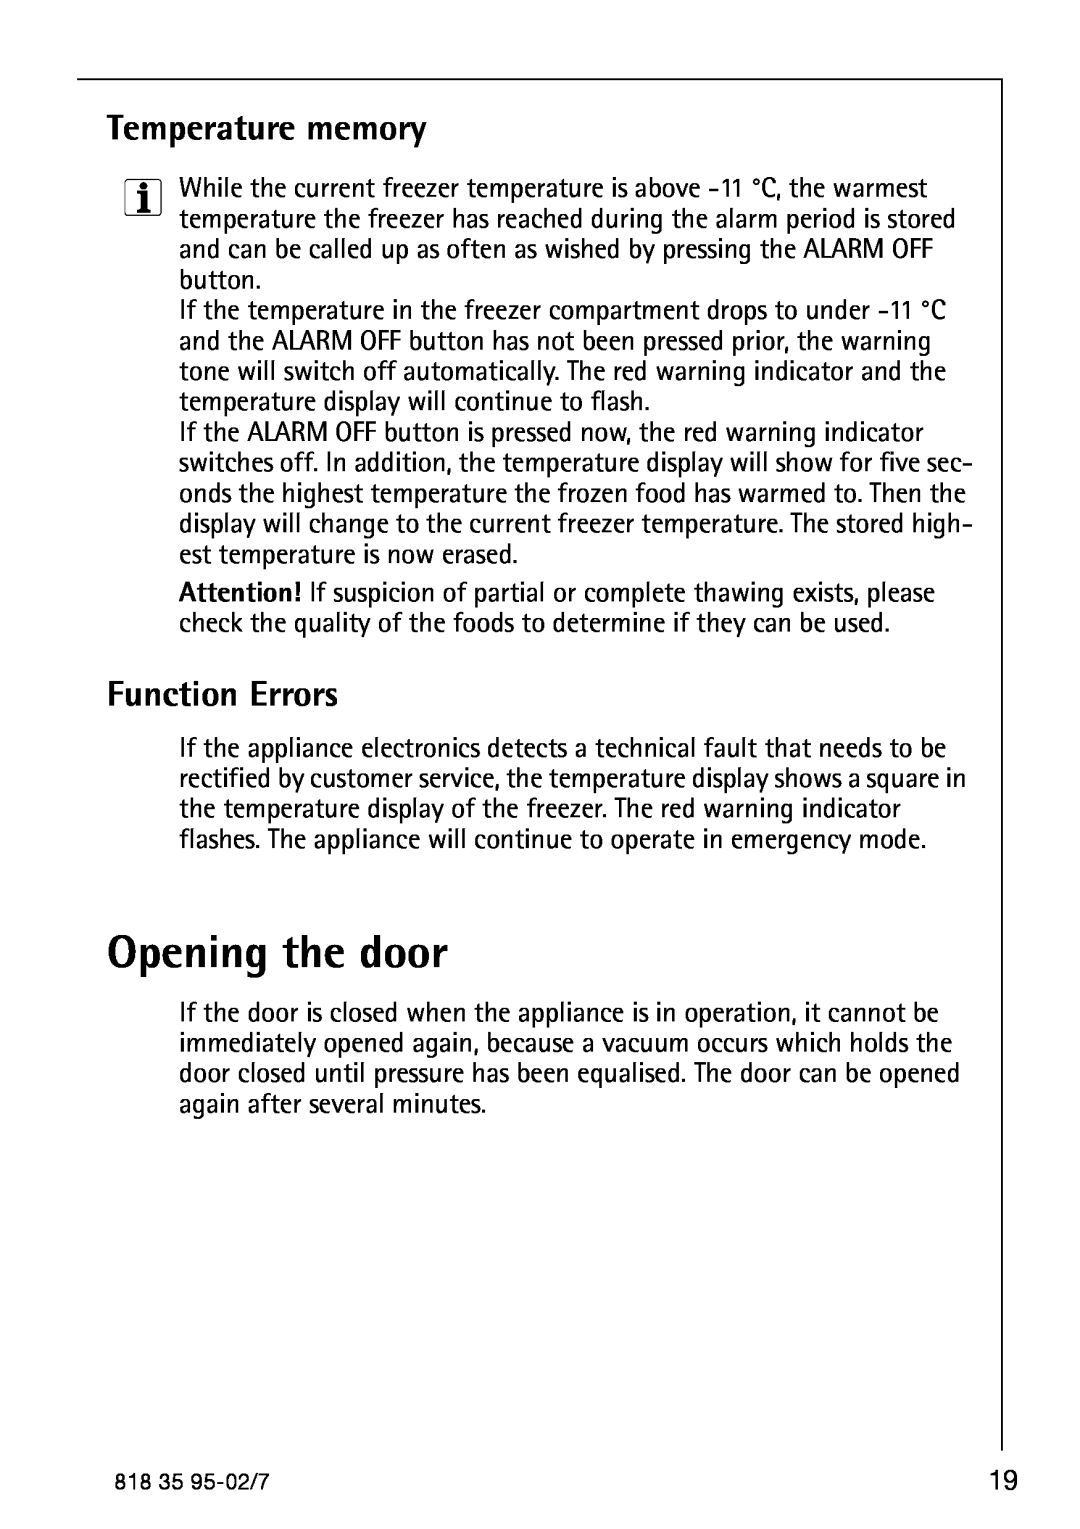 AEG 75248 GA3 manual Temperature memory, Function Errors, Opening the door 